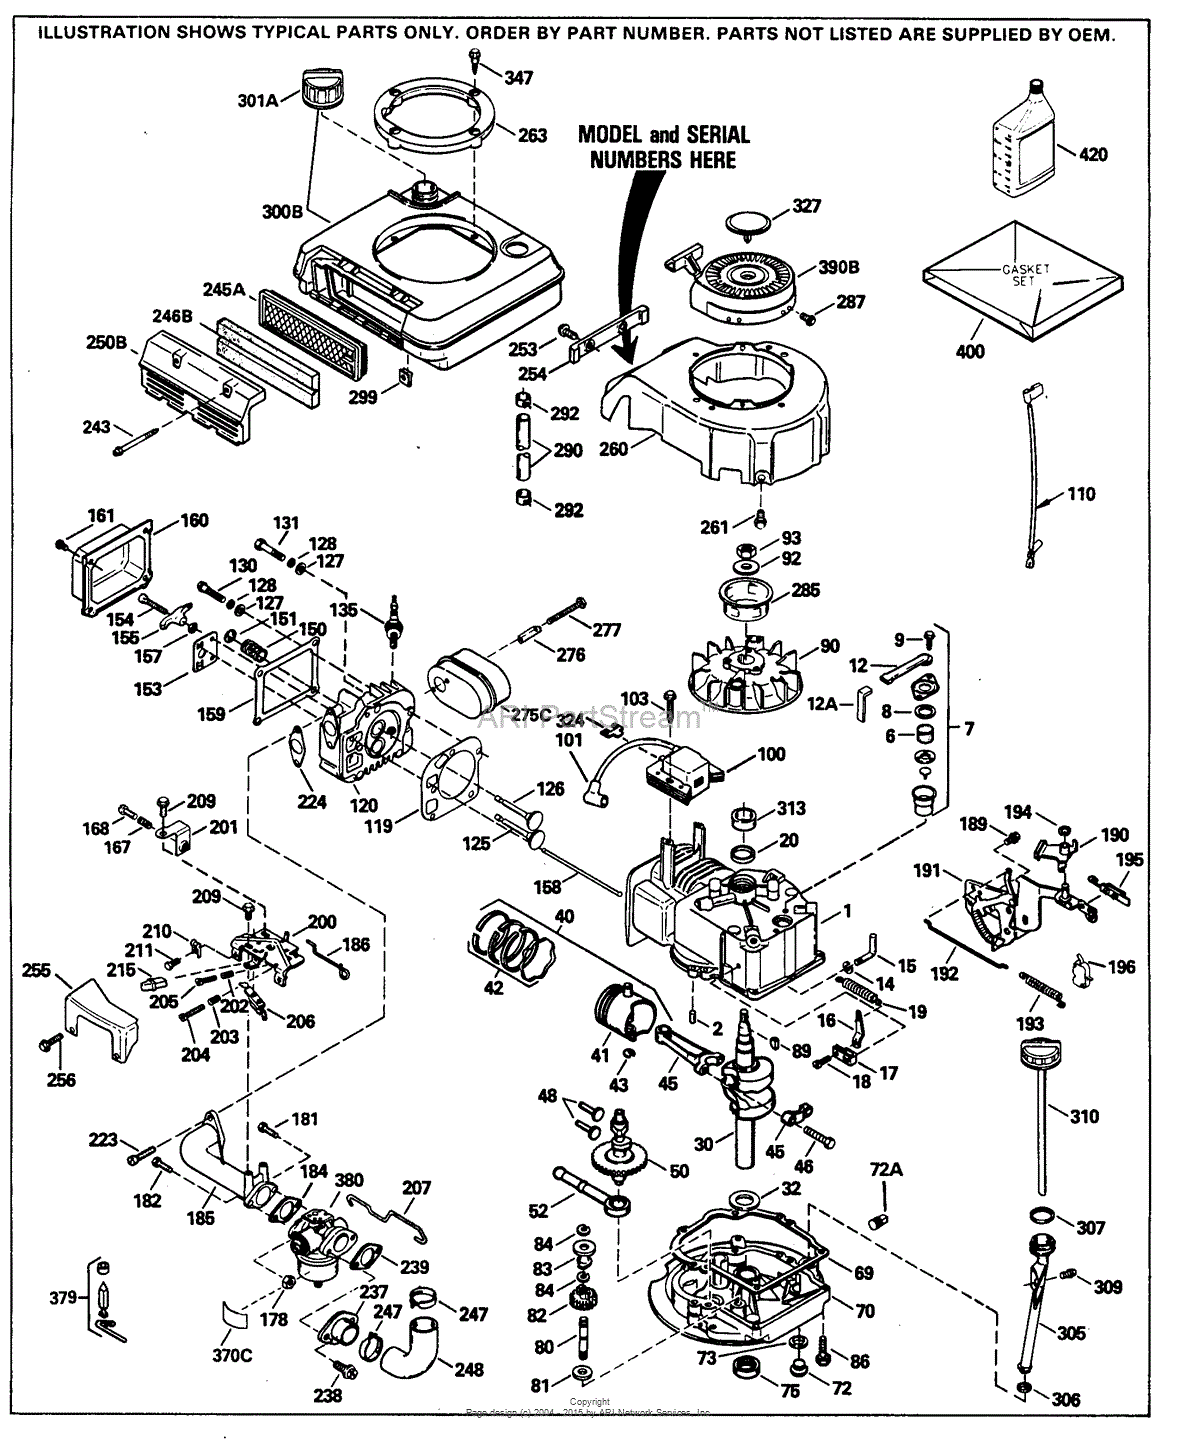 DIAGRAM Hp Tecumseh Engine Diagram